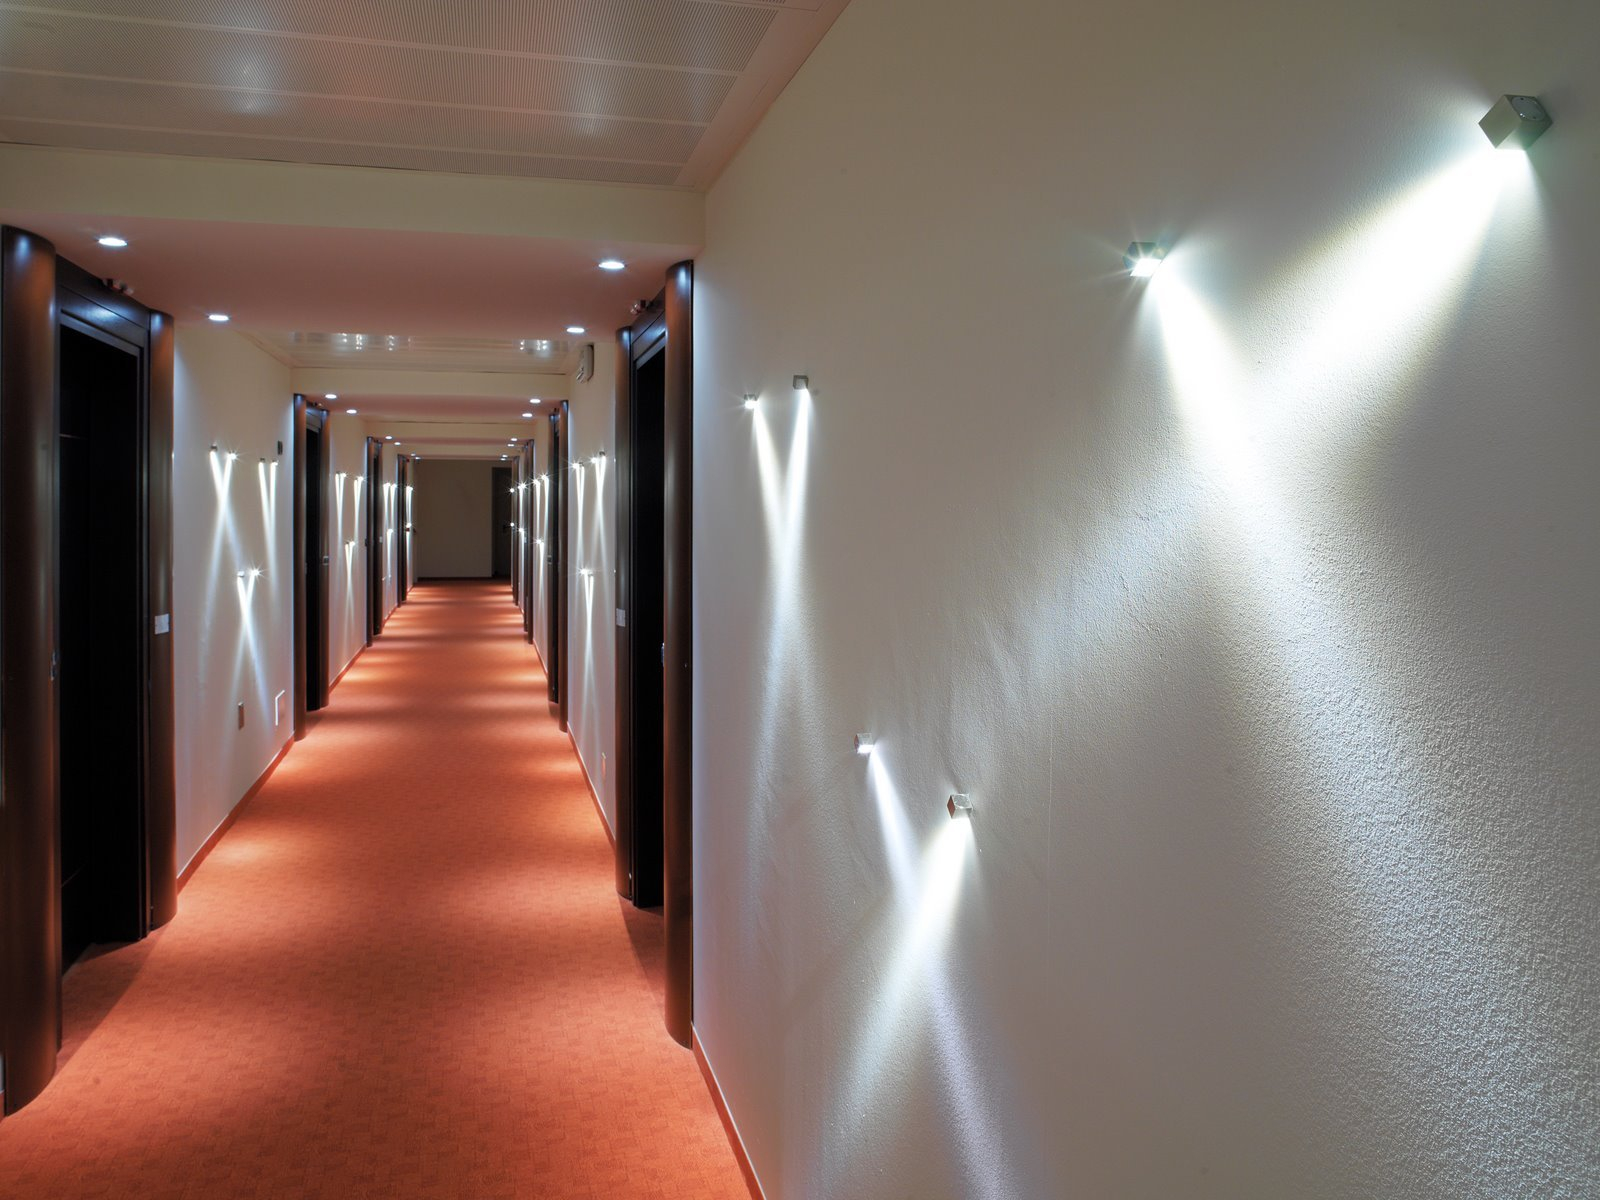 Дополнительный источник света. Светильники в коридор. Освещение в коридоре. Светодиодная подсветка в коридоре. Декоративная подсветка на стену.